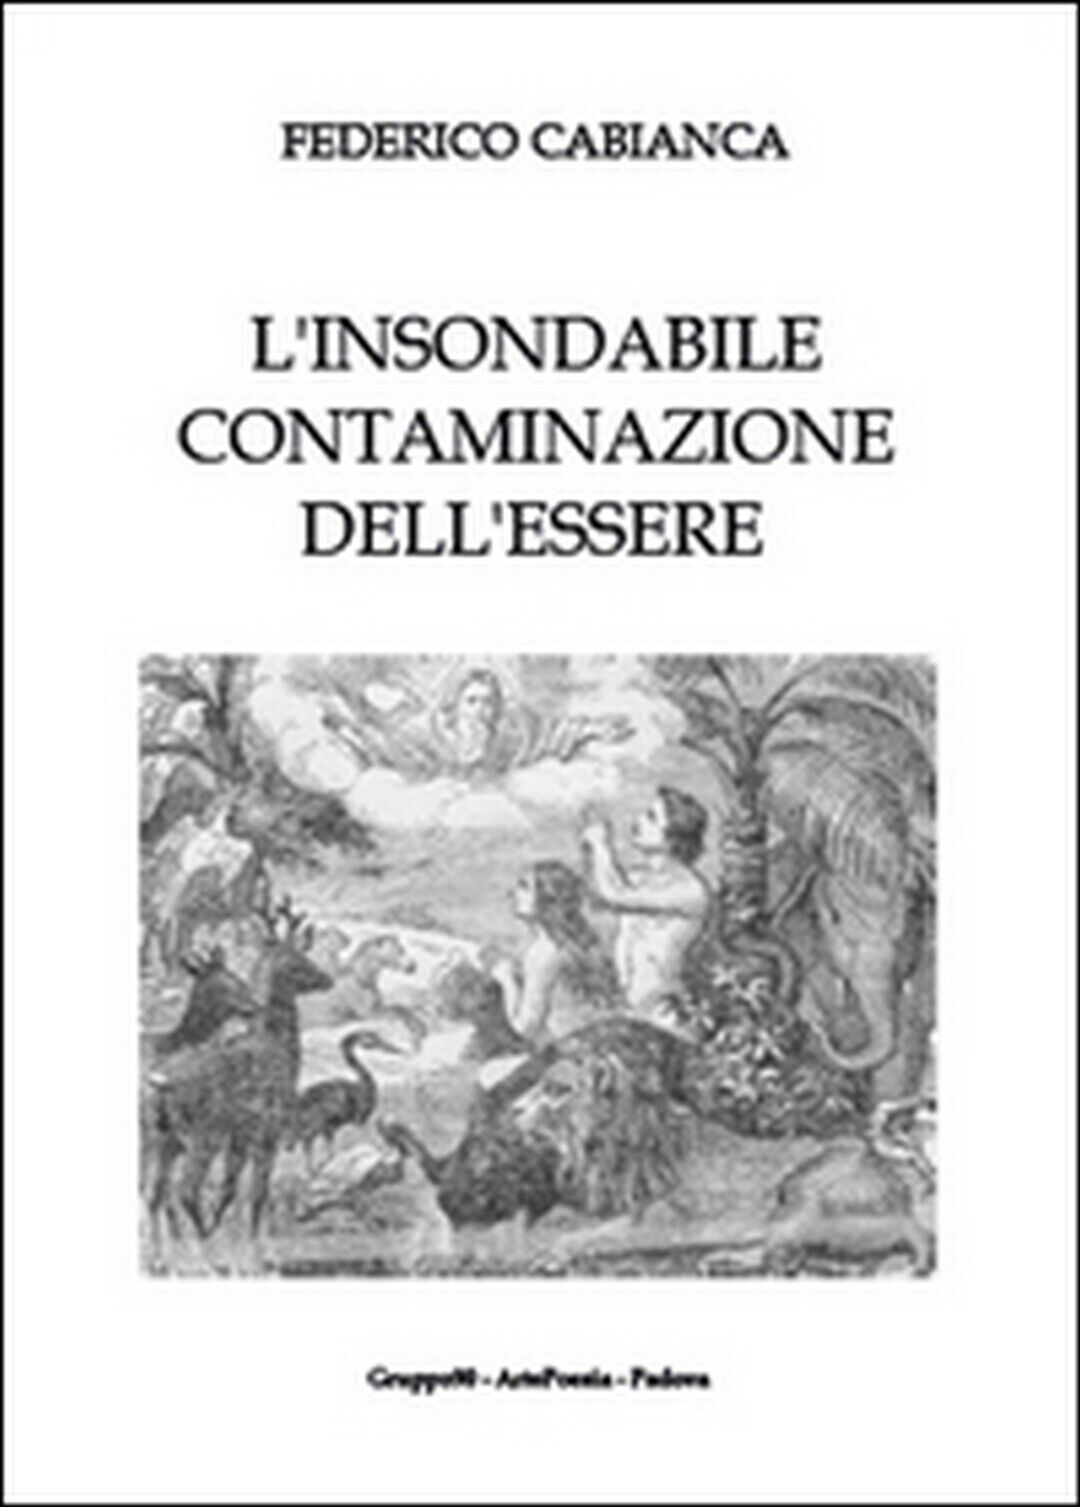 L'insondabile contaminazione delL'essere, Federico Cabianca,  2015,  Youcanprint